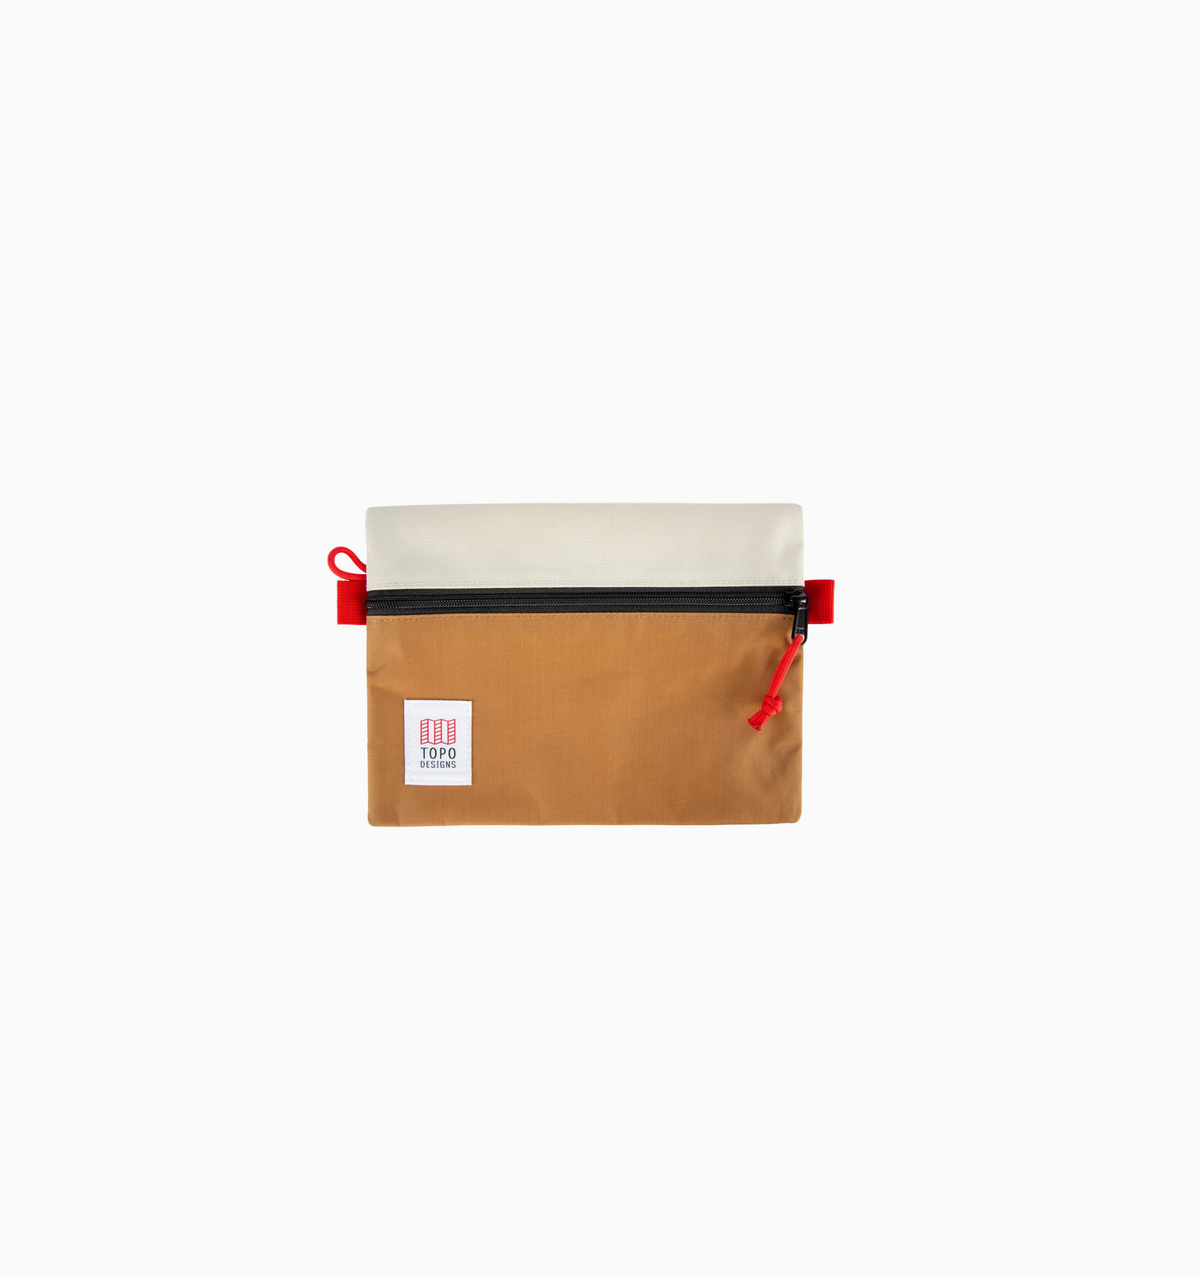 Topo Designs Micro Accessory Bag - Bone White Khaki